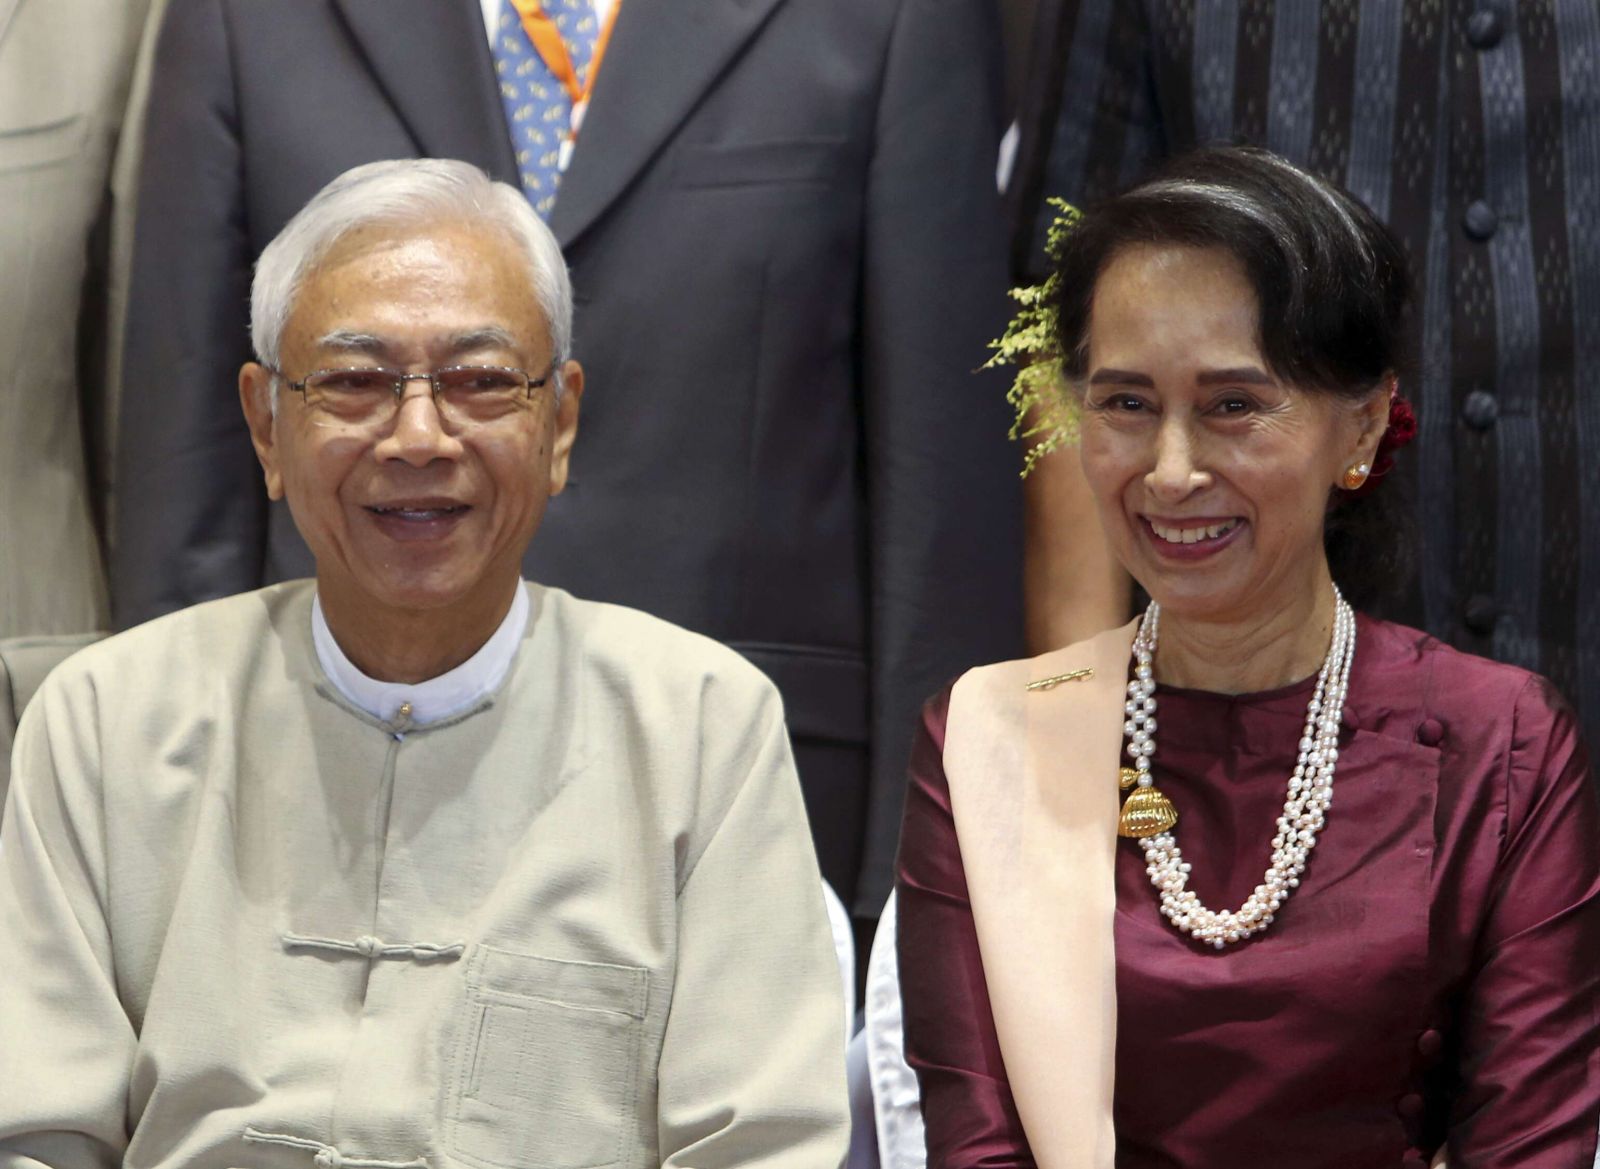 緬甸總統廷覺宣布辭職